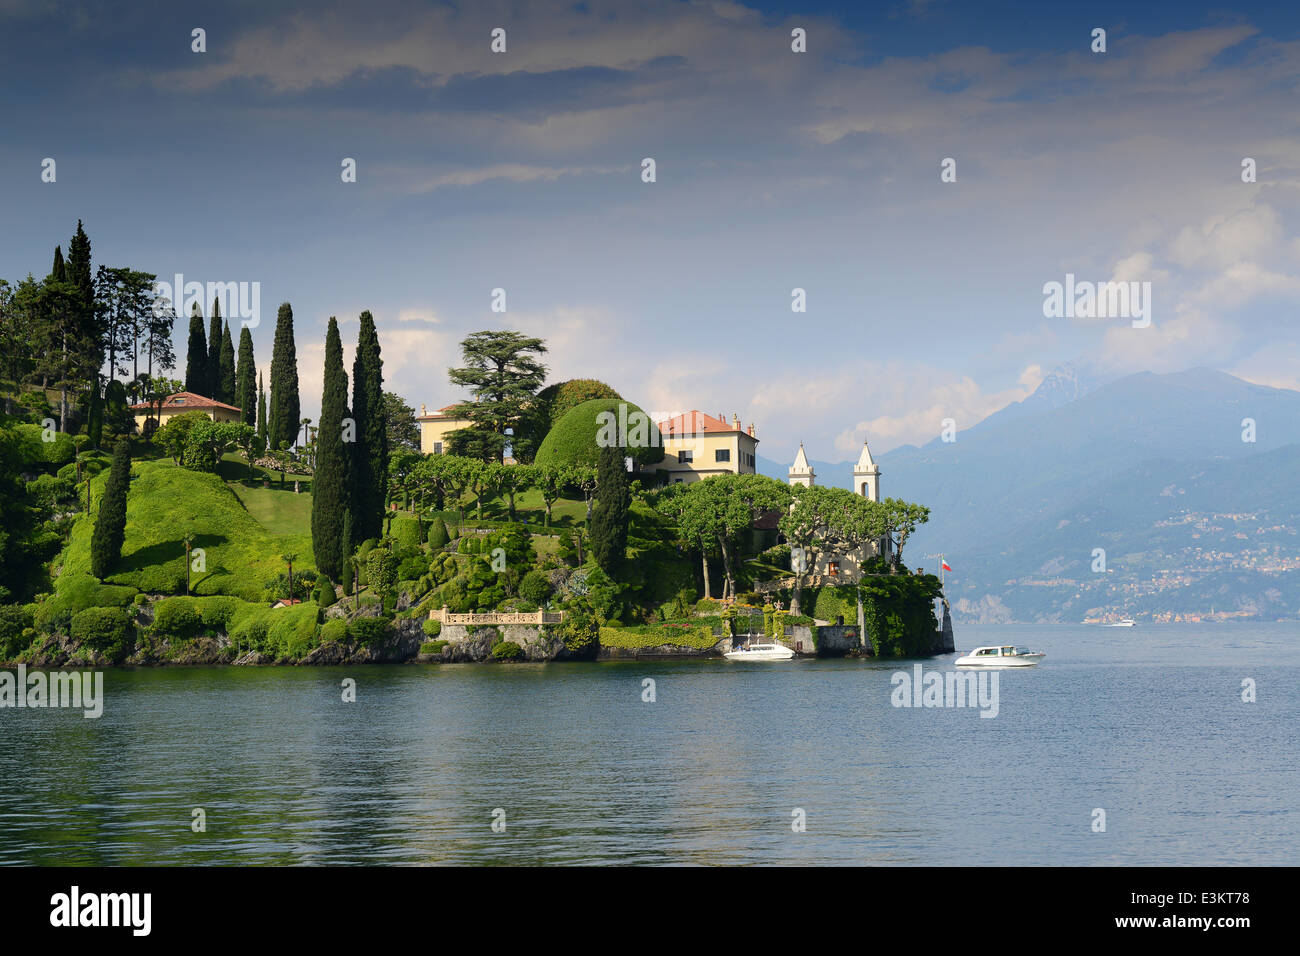 Villa Balbianello and gardens, Lenno, Lake Como, Italy Stock Photo